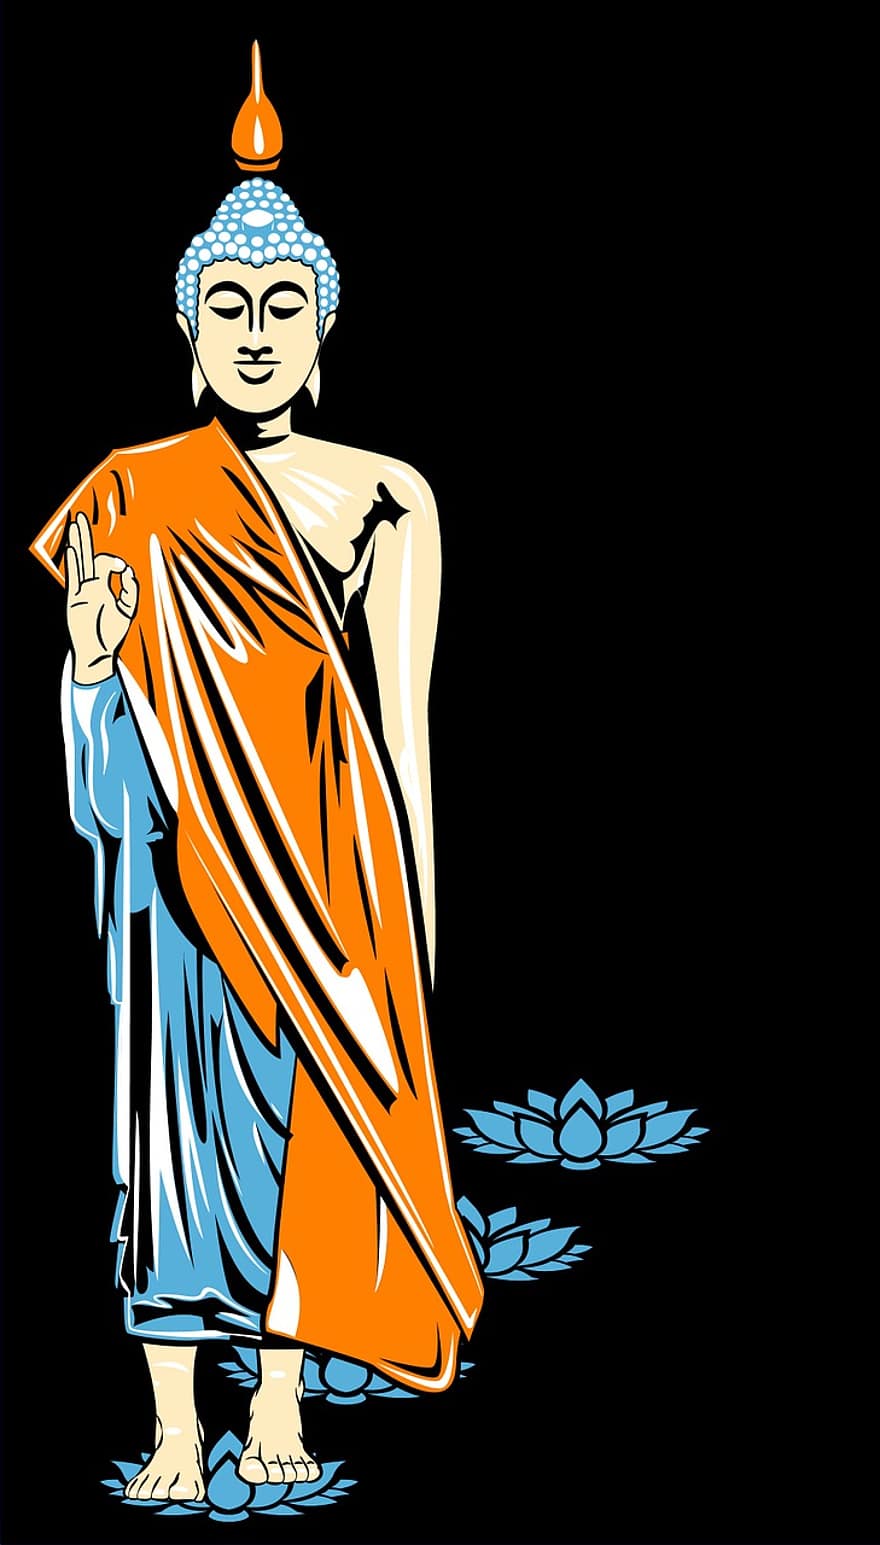 Будда, зображення, трафаретний друк, Буддизм, Амід, лотос, квітка лотоса, схід, дзен, медитація, йога